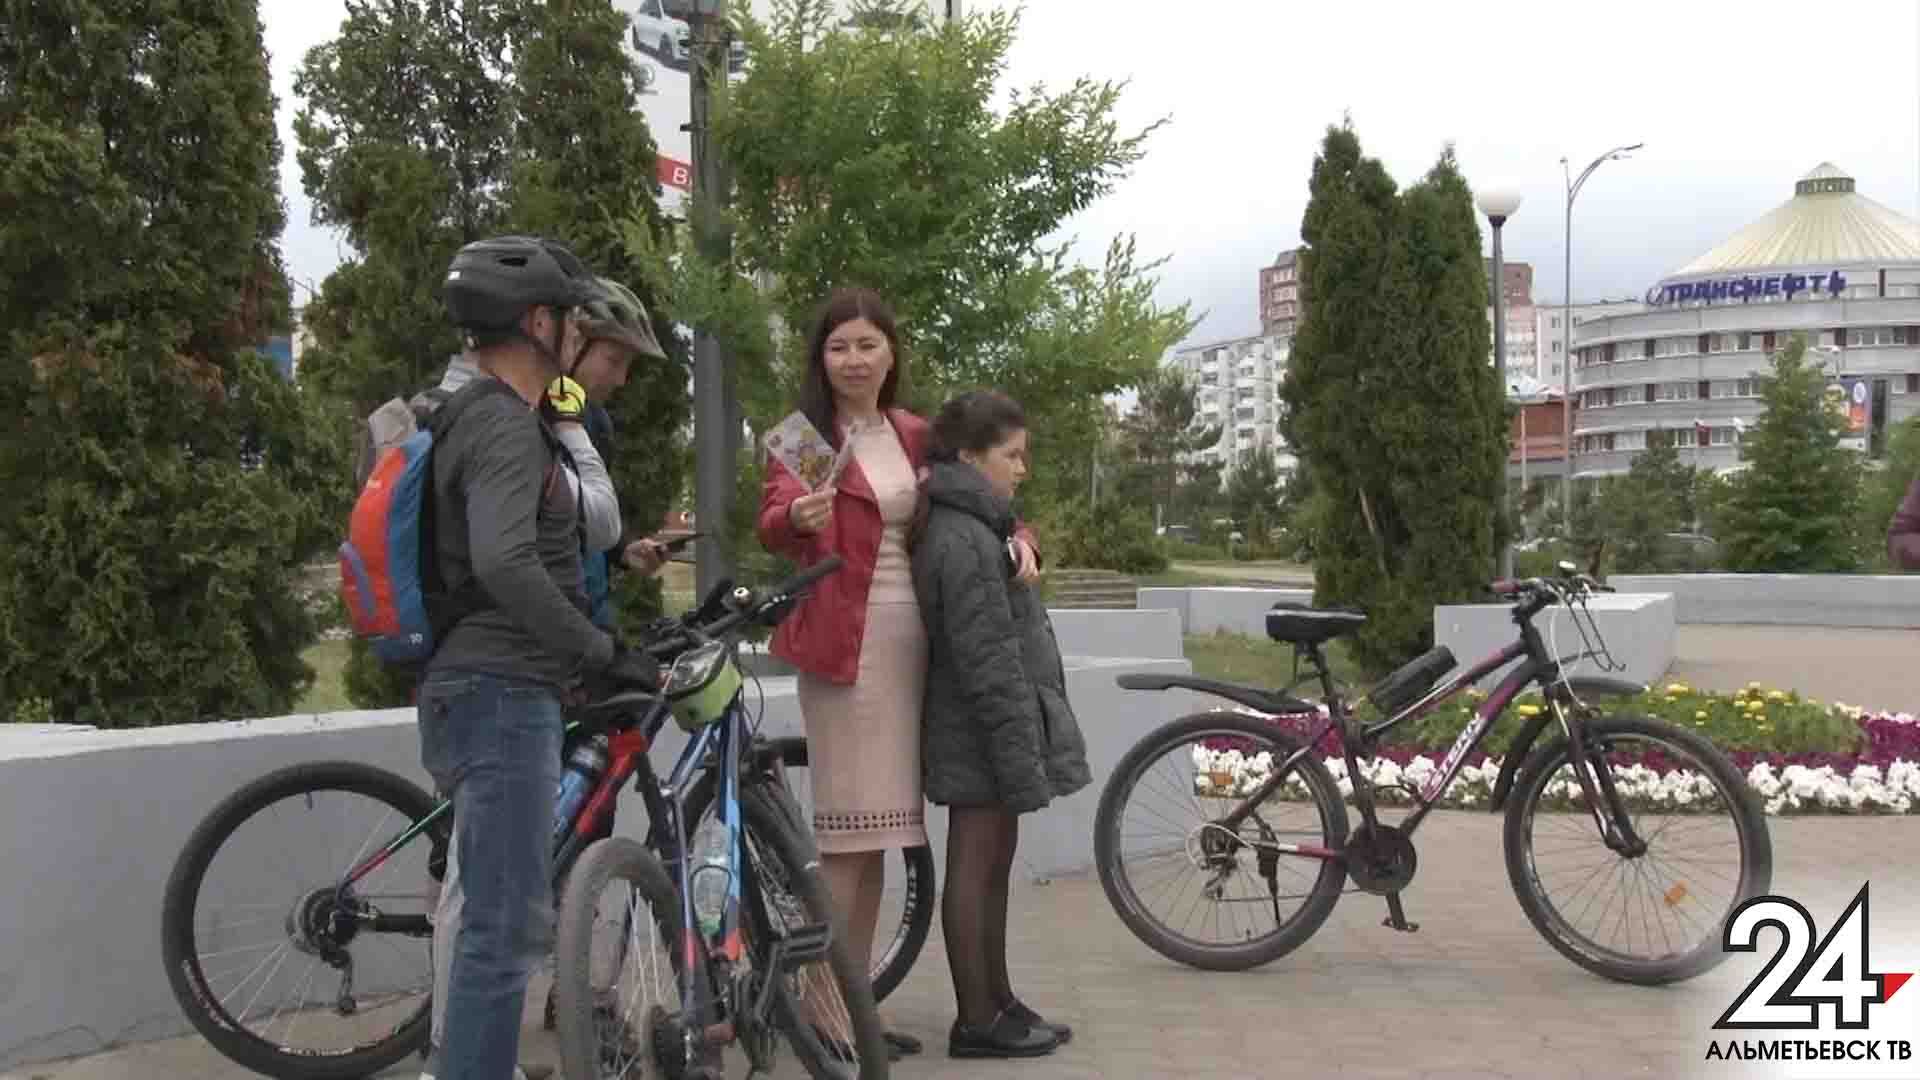 Правила безопасности напомнили велосипедистам в Альметьевске